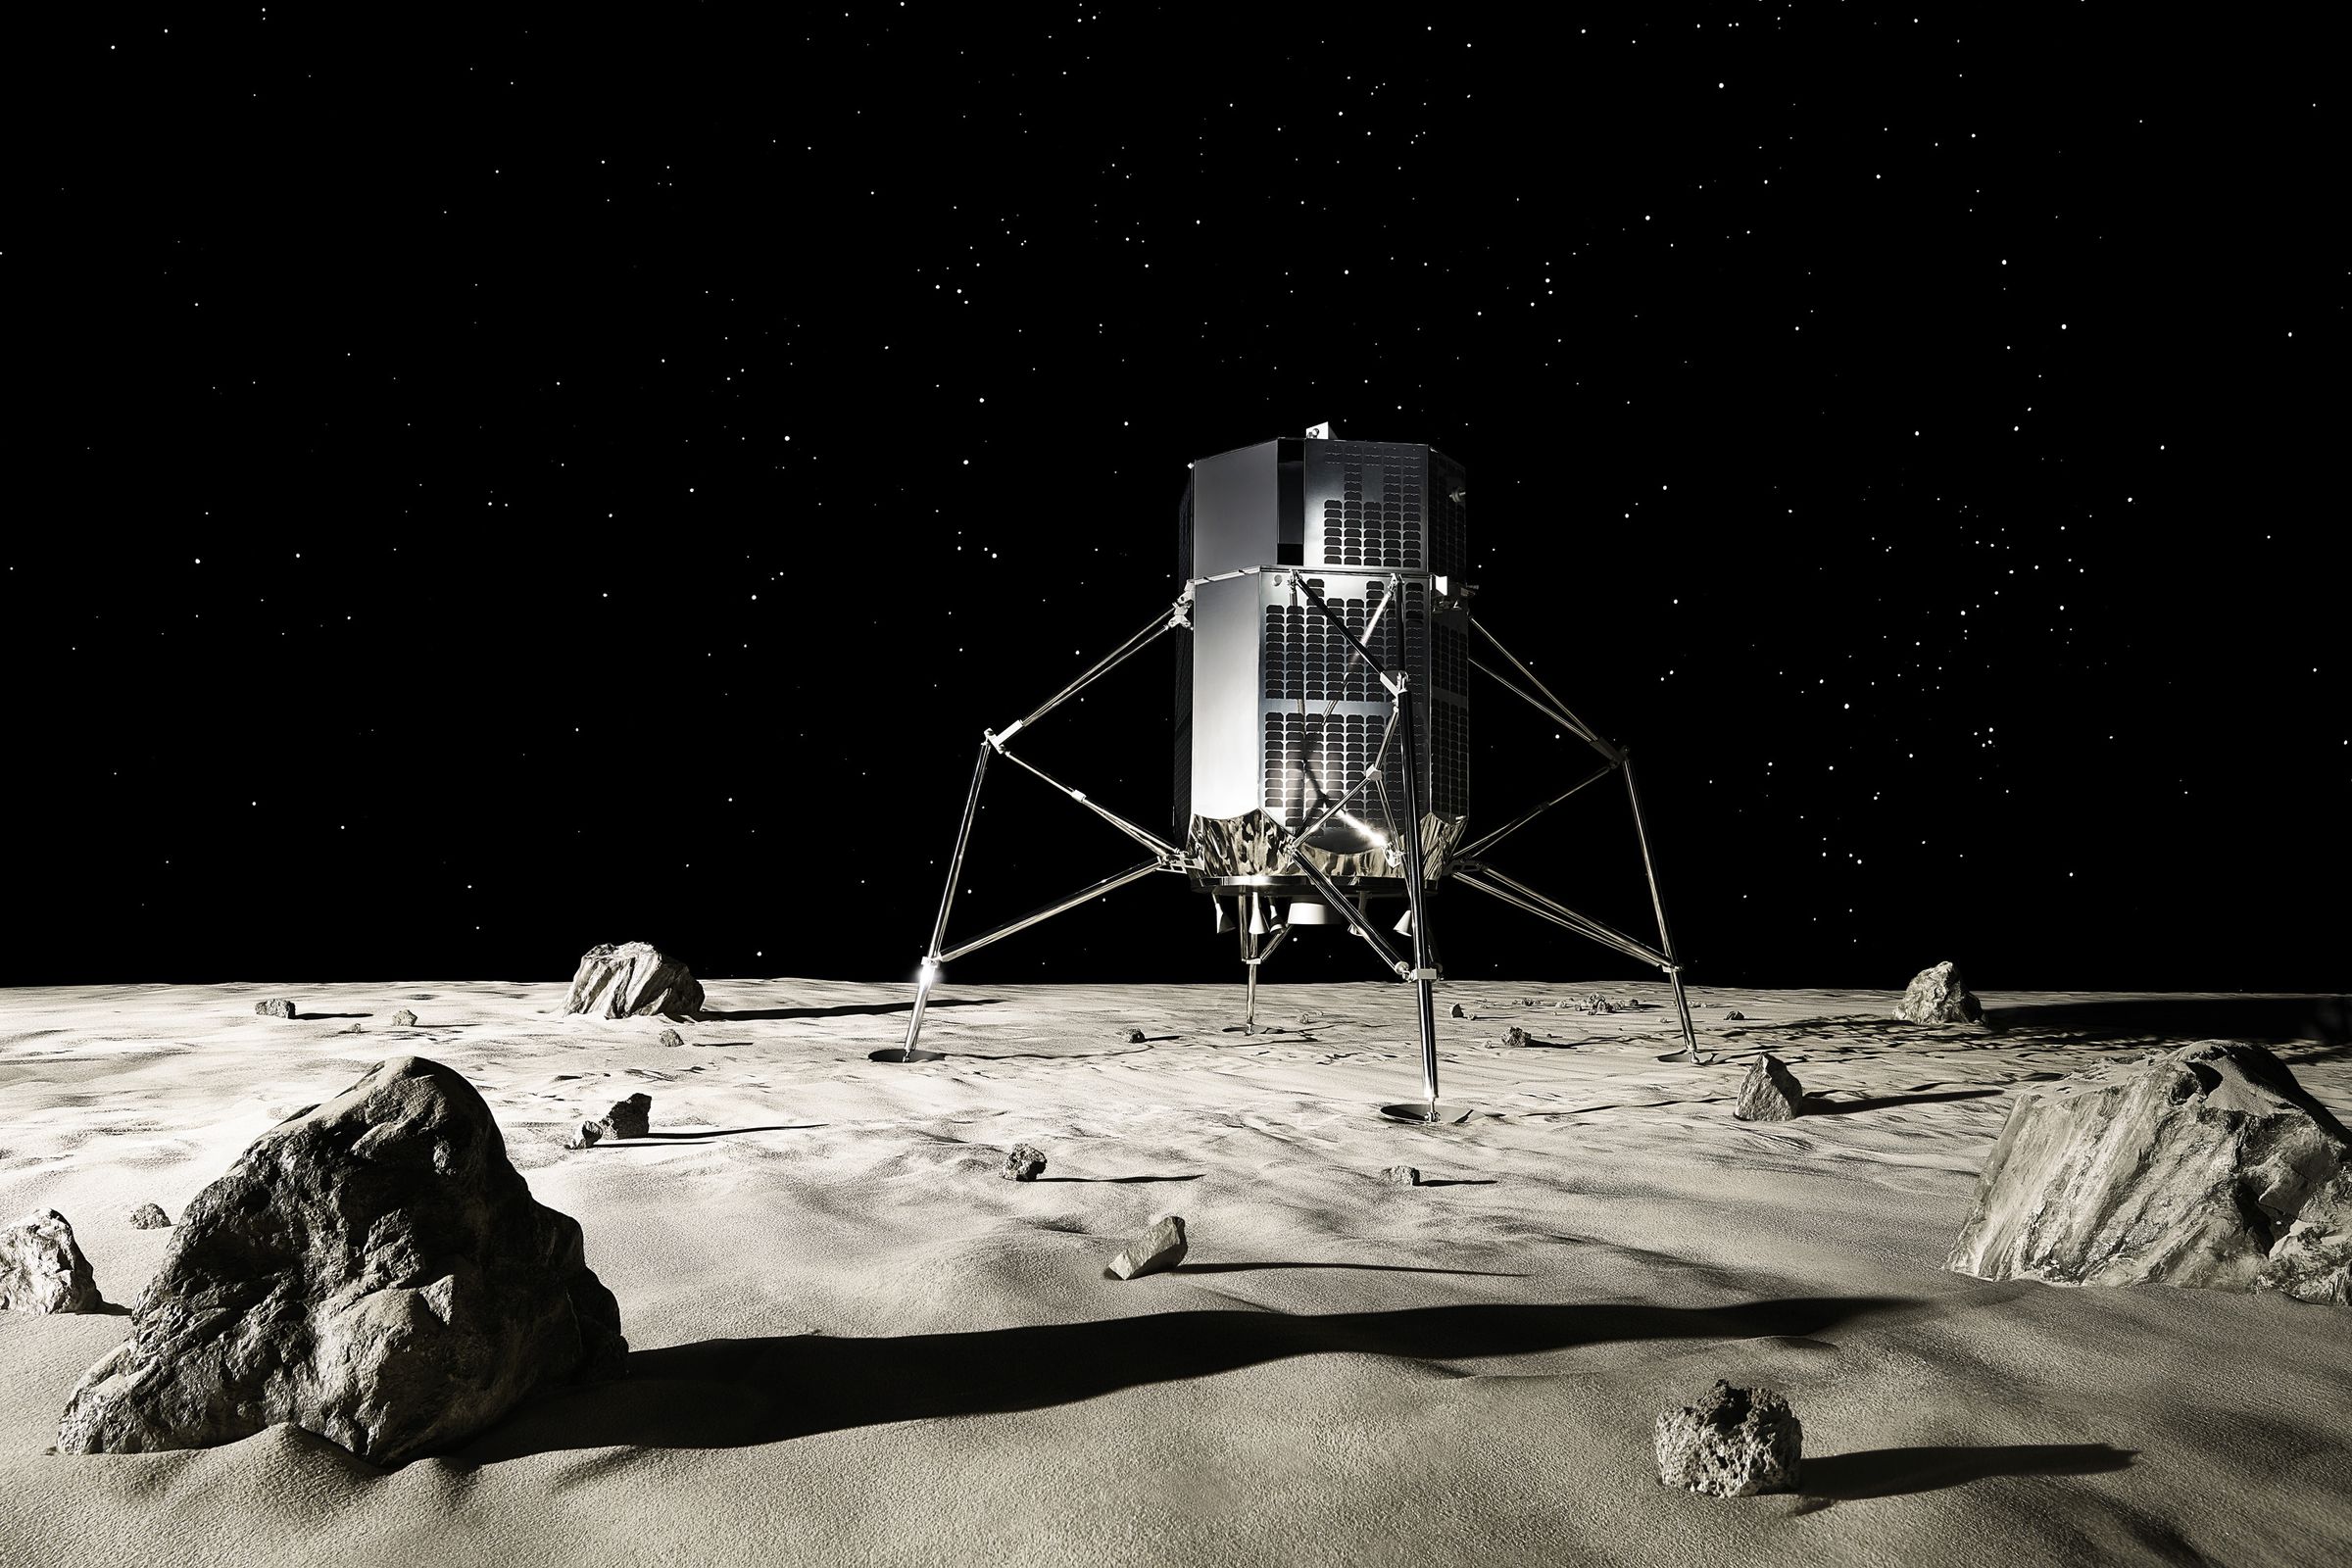 A mockup of ispace’s lunar lander concept.